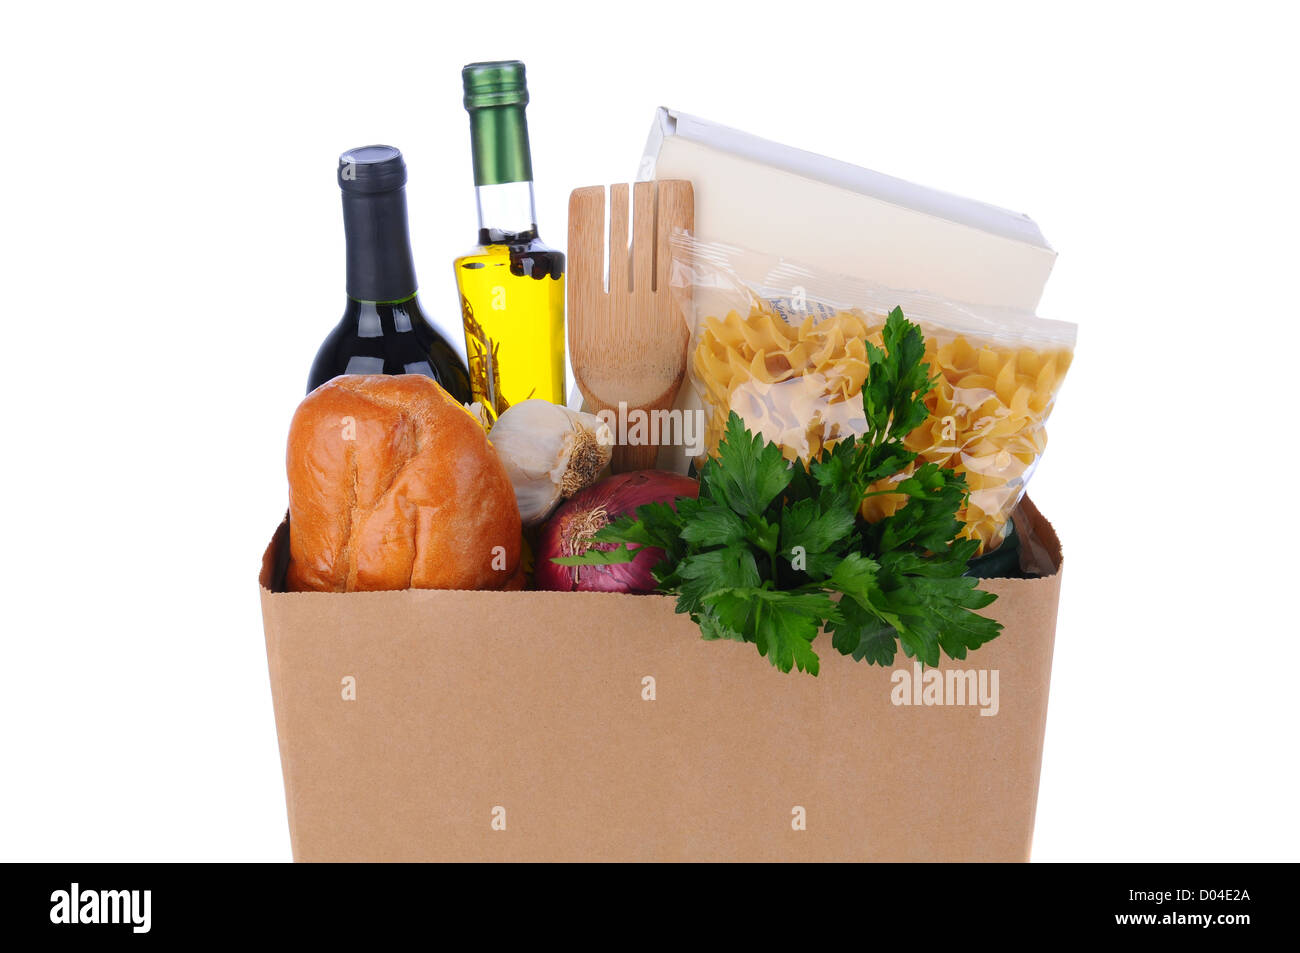 https://c8.alamy.com/comp/D04E2A/closeup-of-a-brown-bag-full-of-groceries-over-a-white-background-horizontal-D04E2A.jpg